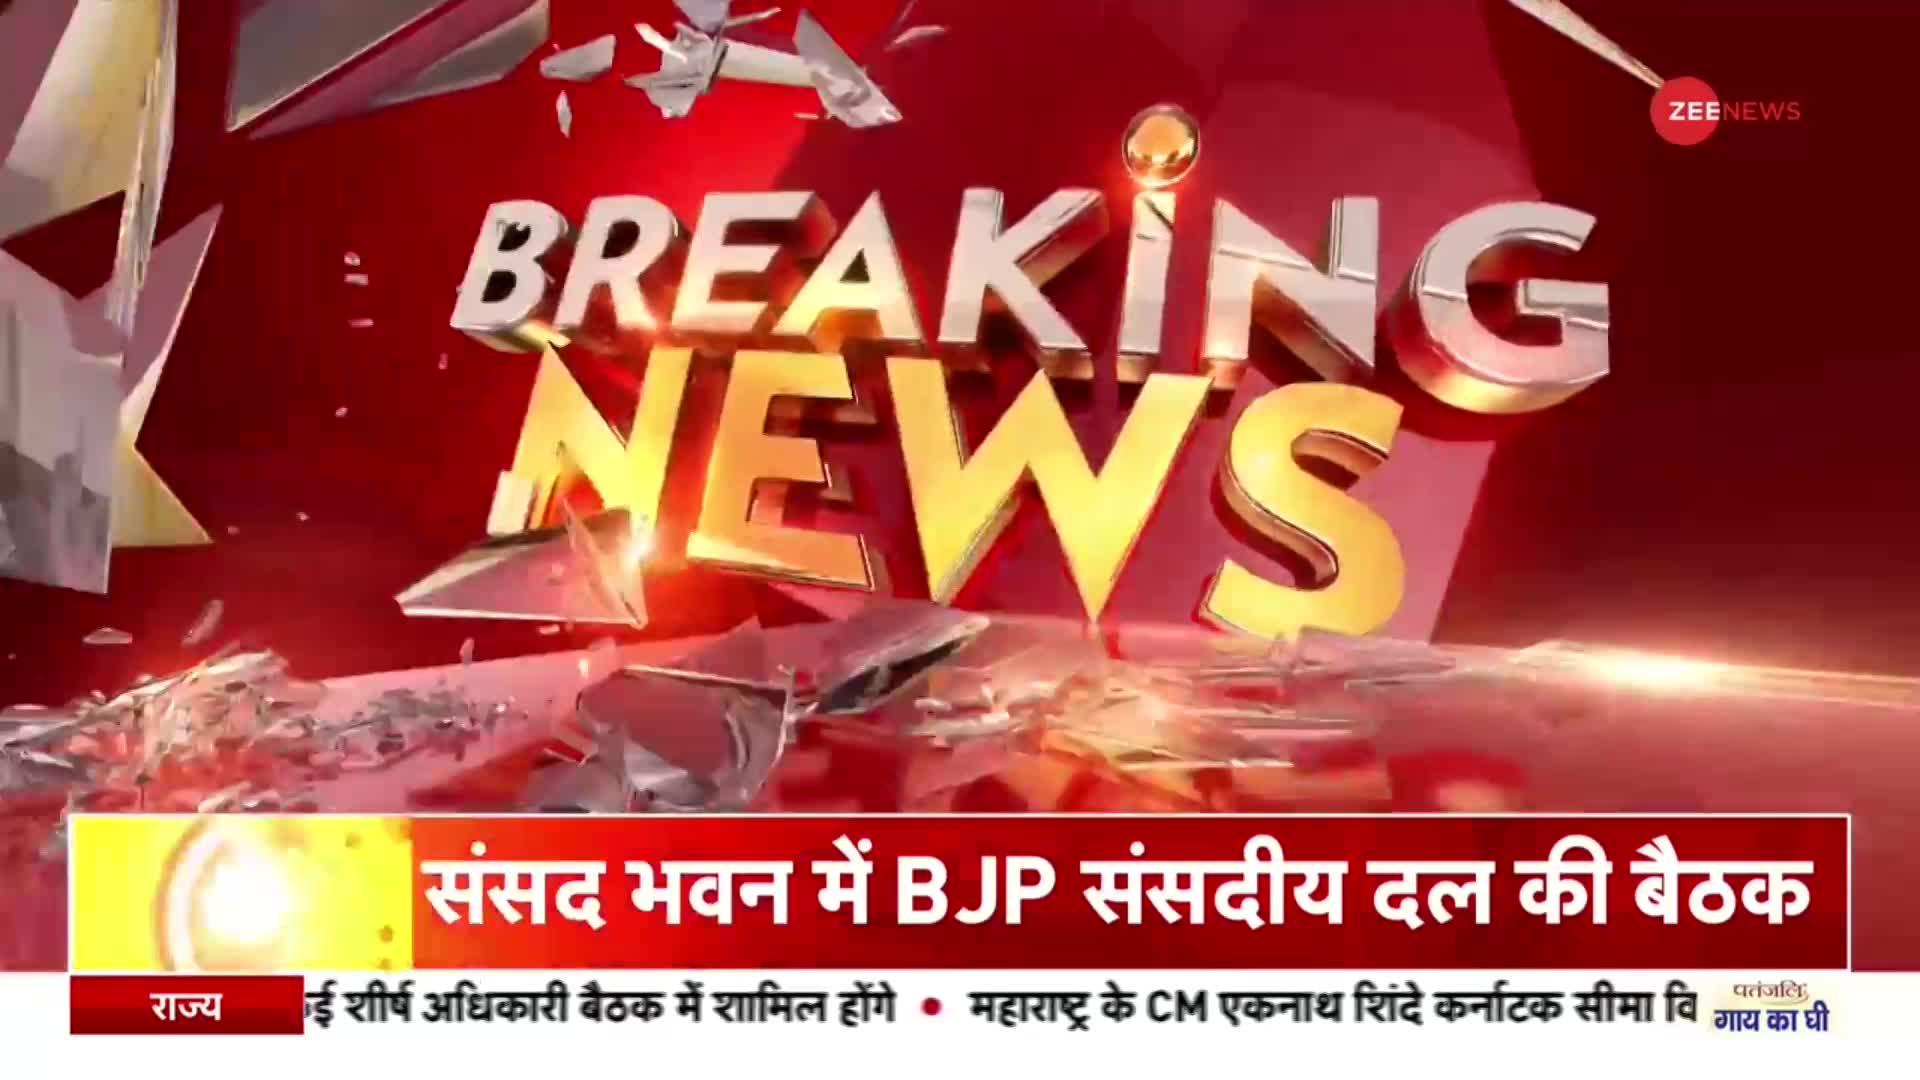 BJP संसदीय दल की बैठक में लगे 'PM मोदी स्वागत है' के नारे, अमित शाह भी रहे मौजूद | BJP | Gujarat